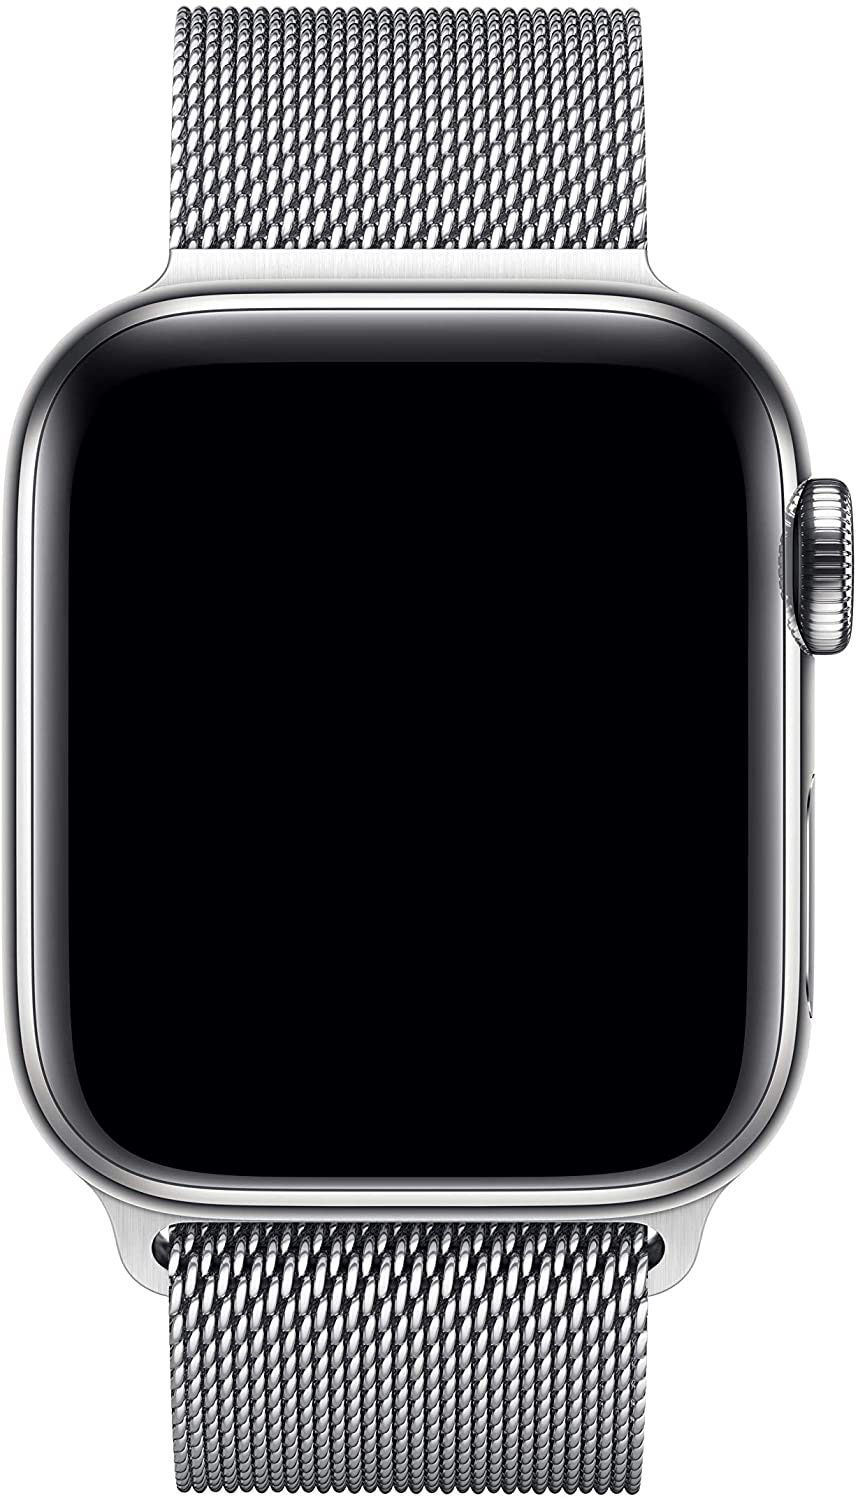 7 labākās metāla Apple pulksteņu siksniņas, pēc pulksteņu nēsātāju domām